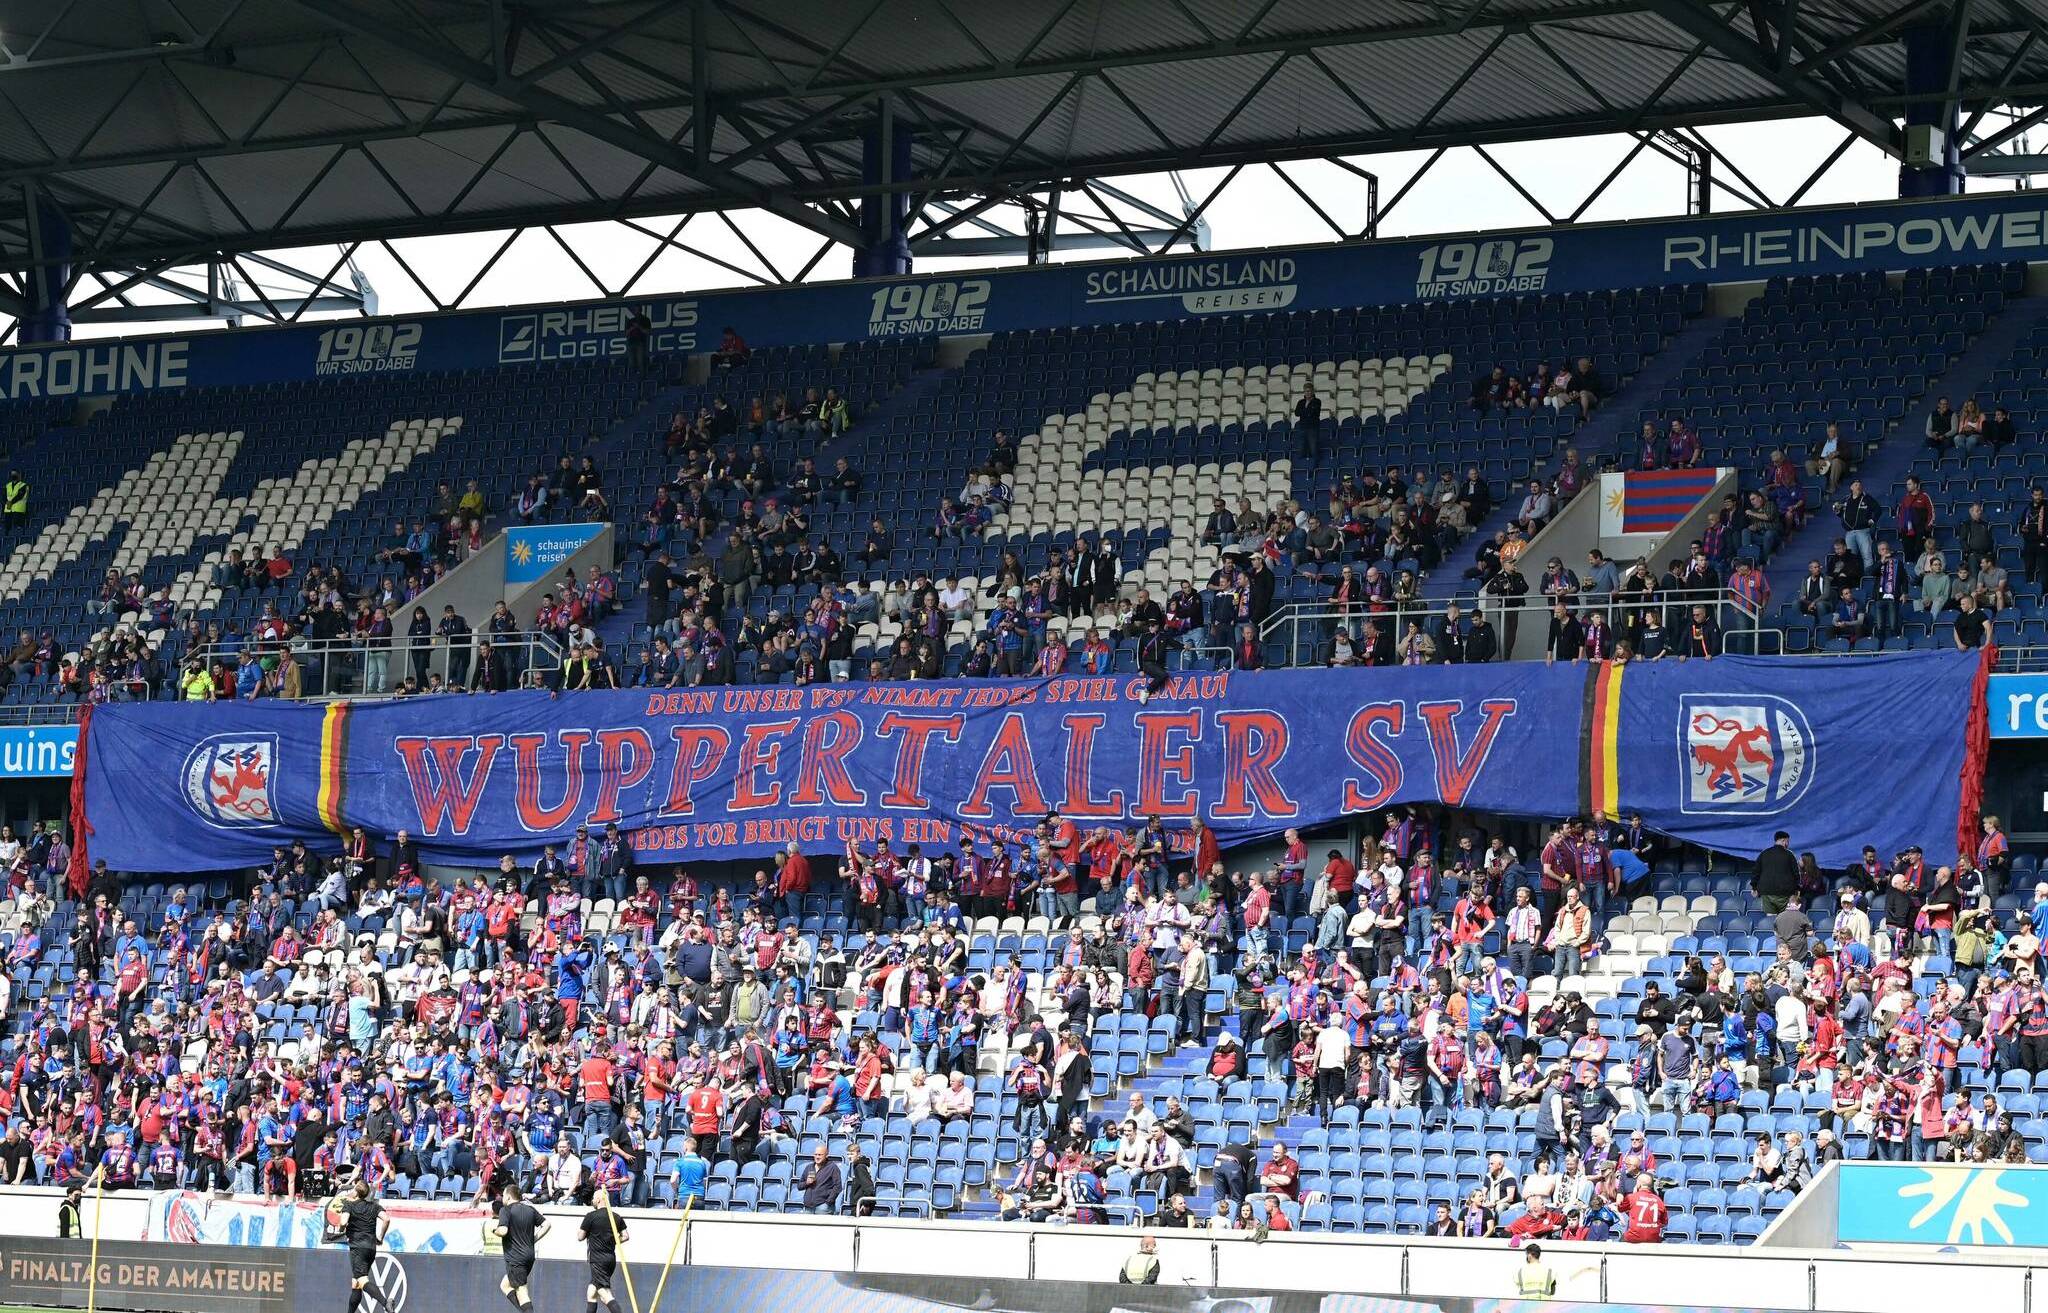 Die Ultras brachten ein riesiges Banner...